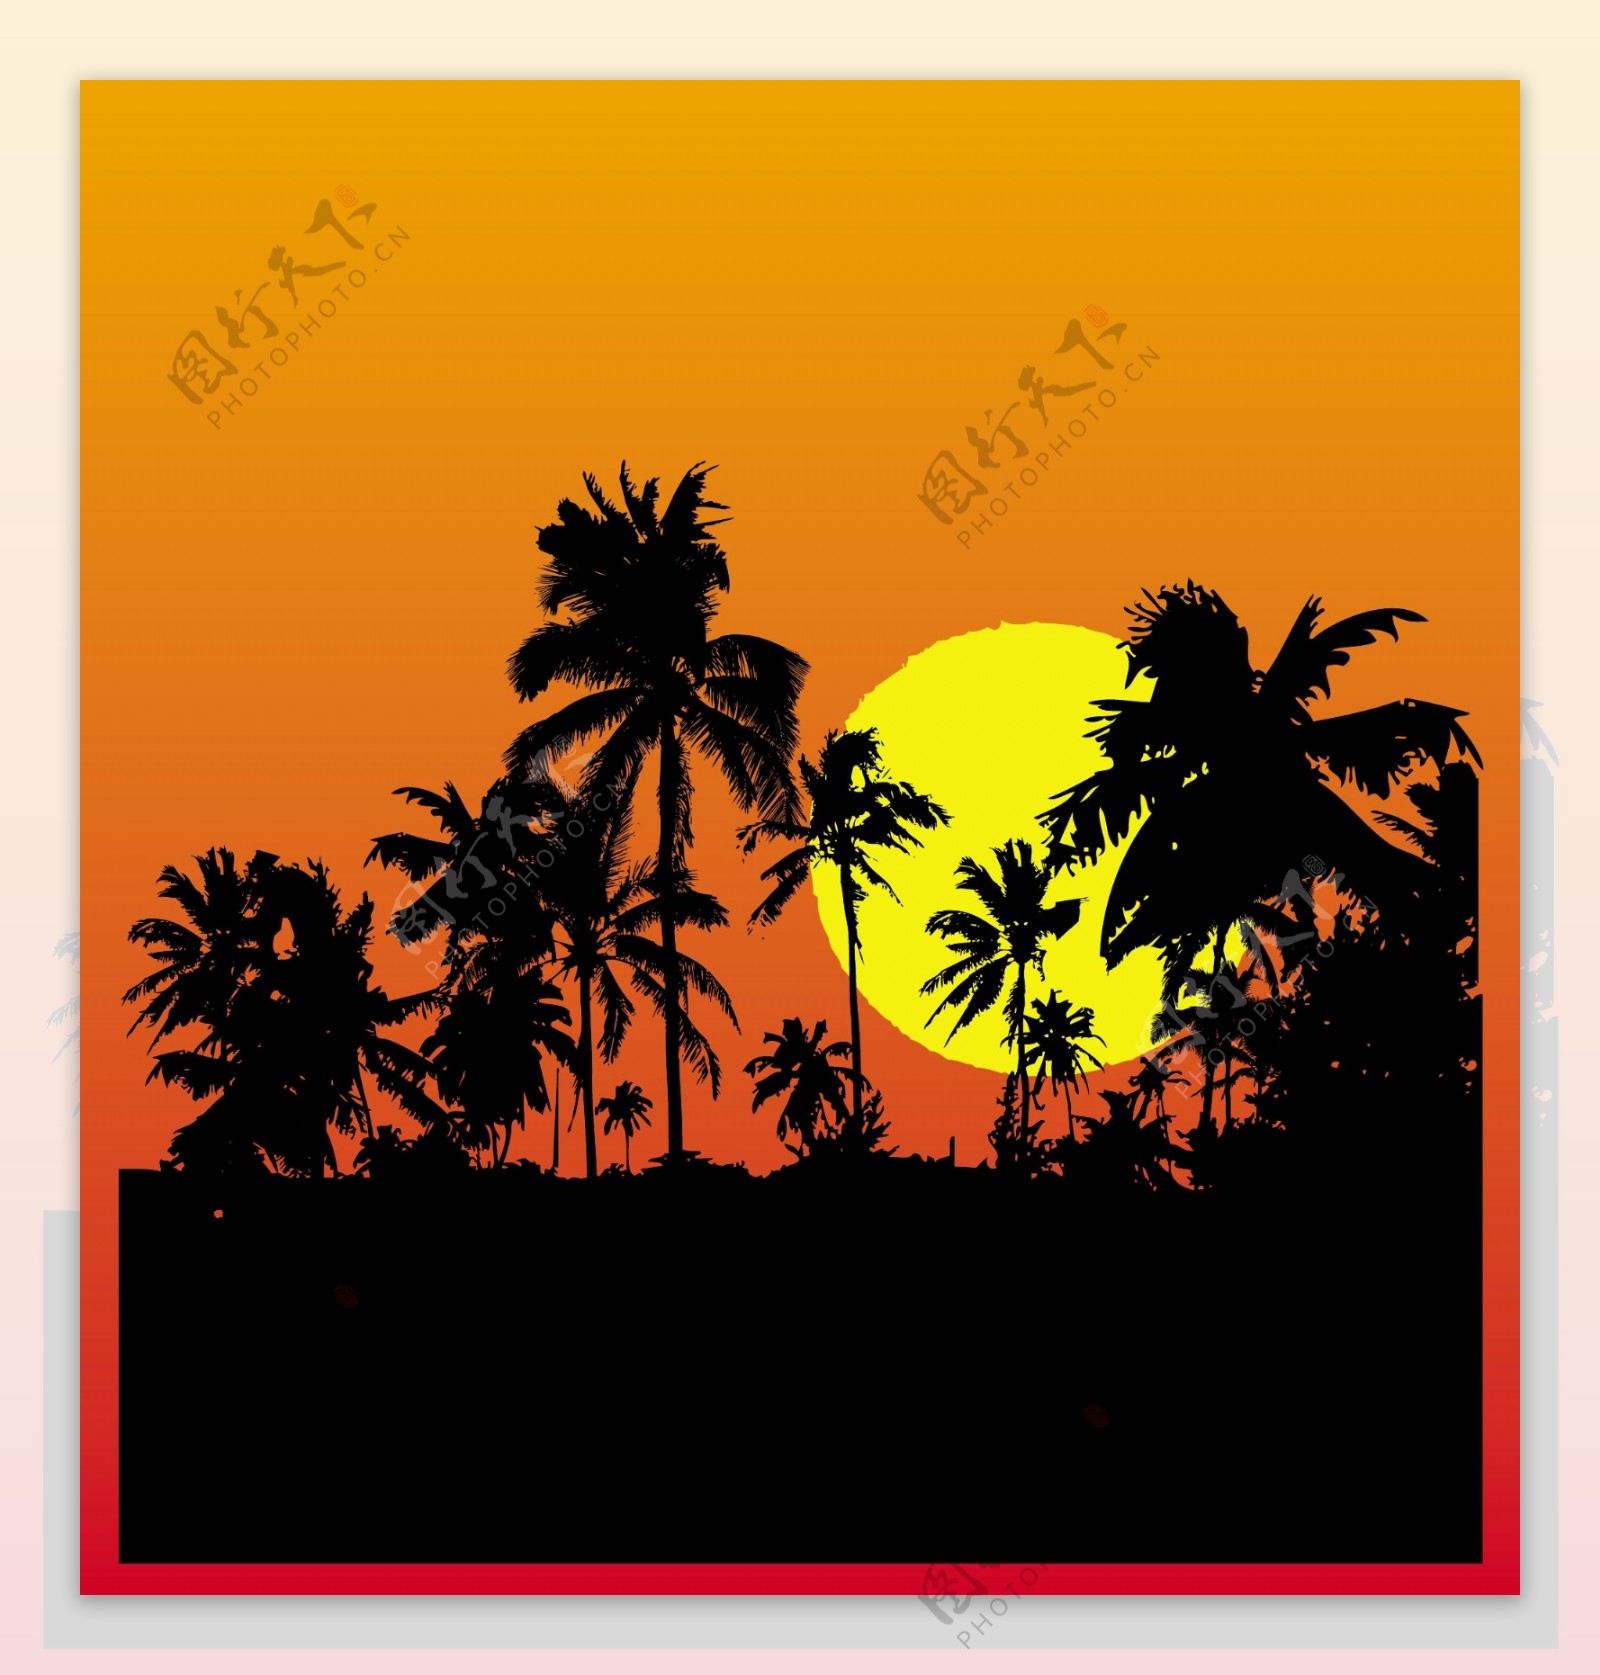 热带夕阳的剪影背景